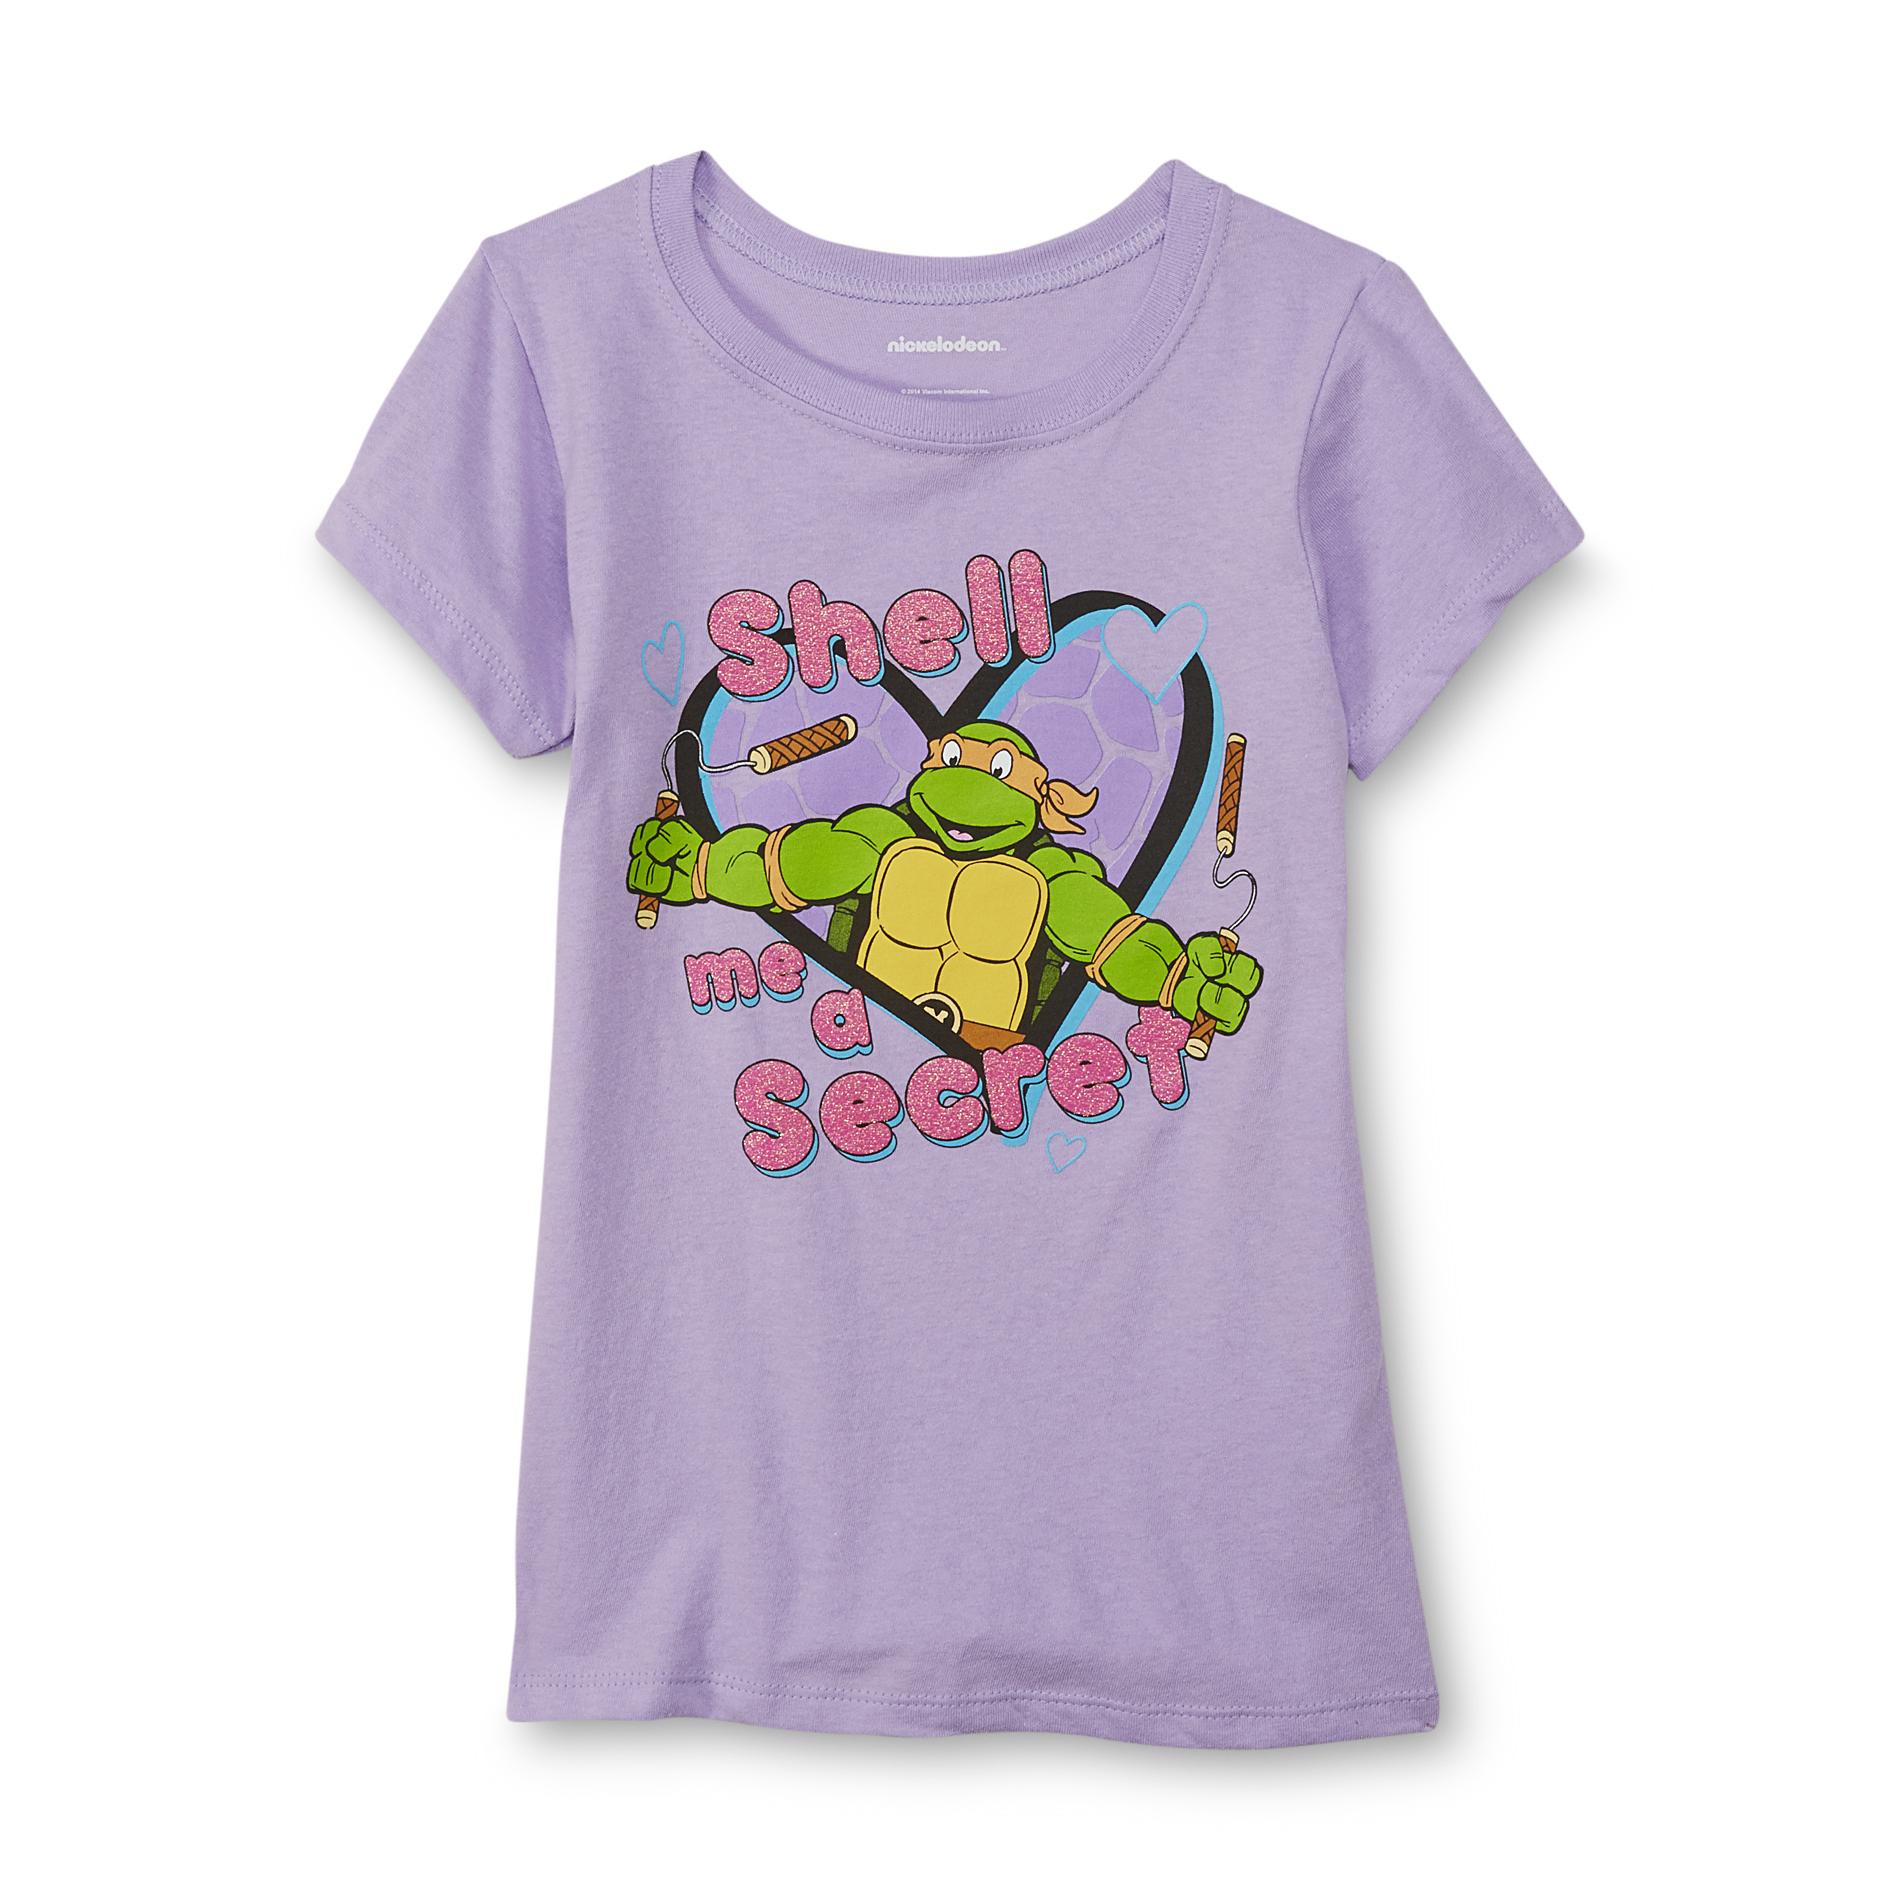 Nickelodeon Teenage Mutant Ninja Turtles Girl's Graphic T-Shirt - Michelangelo